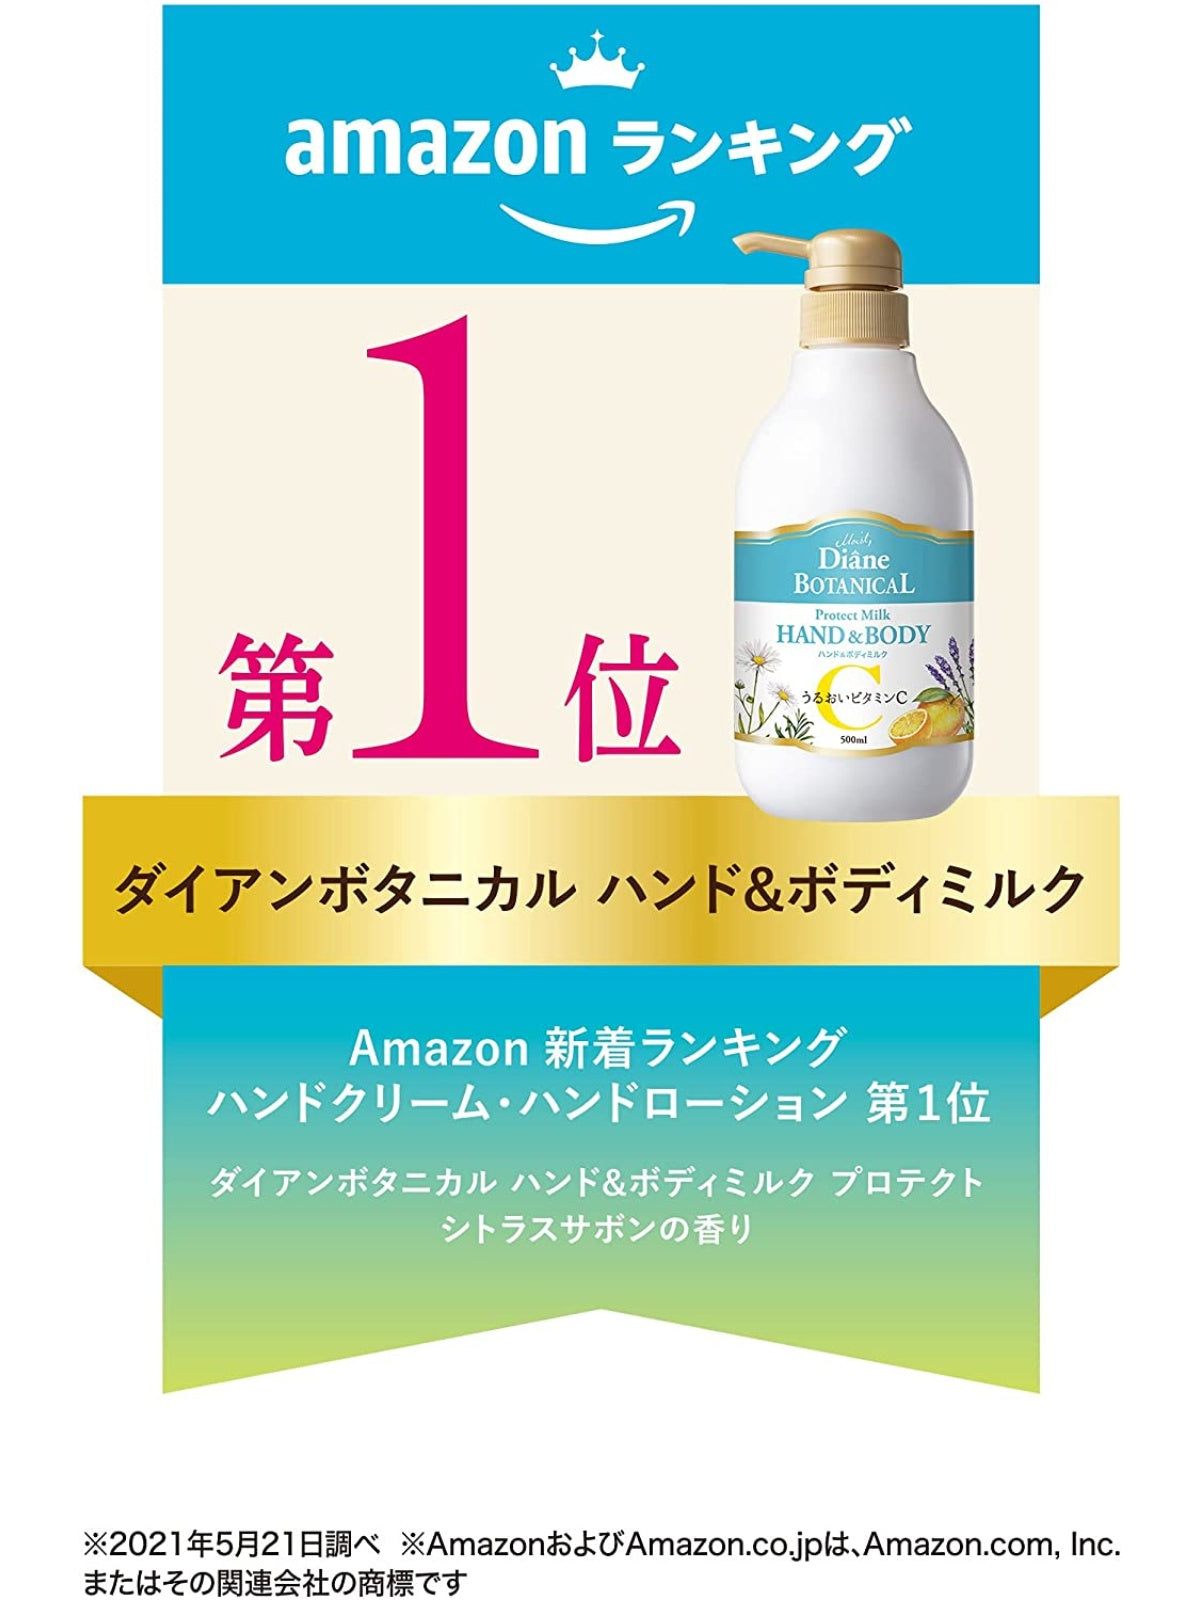 ボディミルク [うるおいビタミンC配合] シトラスサボンの香り ダイアンボタニカル プロテクト 500mL NatureLab Store